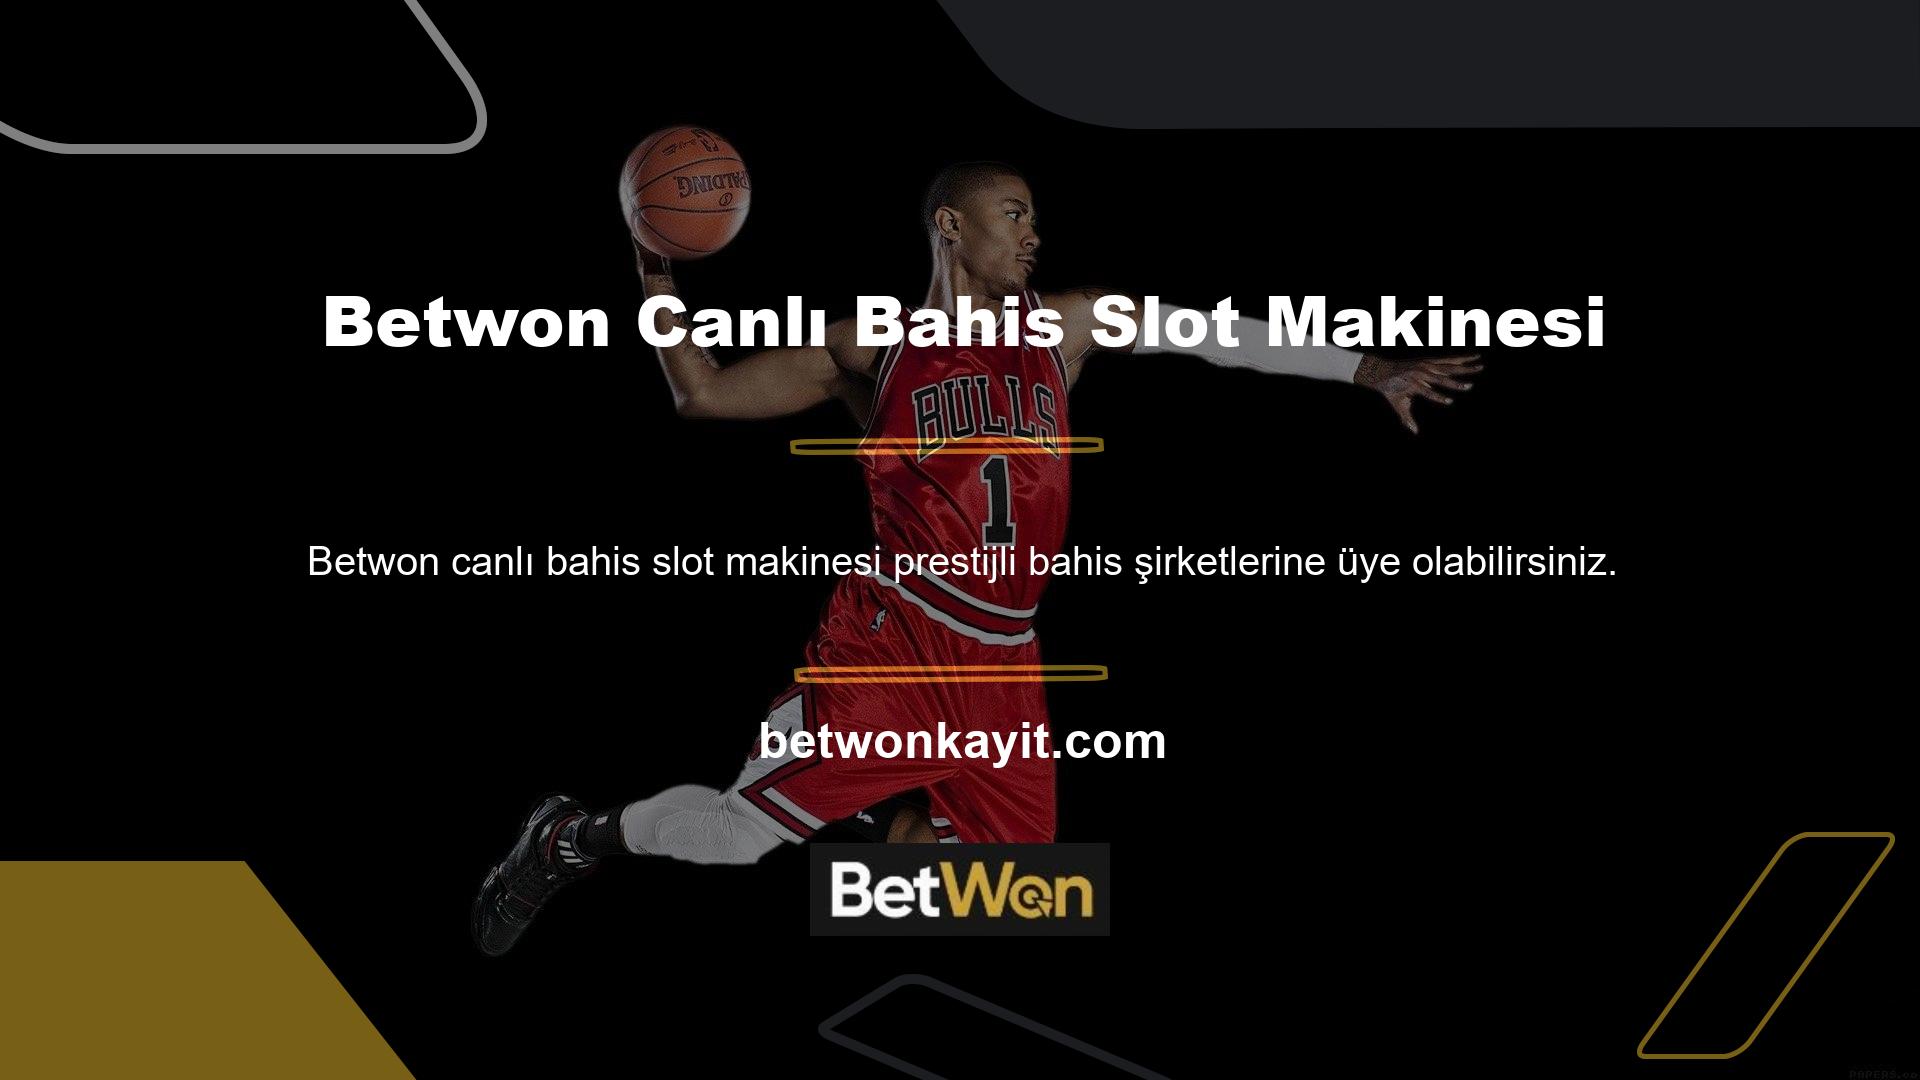 Betwon canlı bahis mobil slot makinesi ile çeşitli casino oyunlarında, canlı Casinoda, çevrimiçi Casinoda, slot makinelerinde, sanal sporlarda ve bingoda kazanma şansınızı artırabilirsiniz